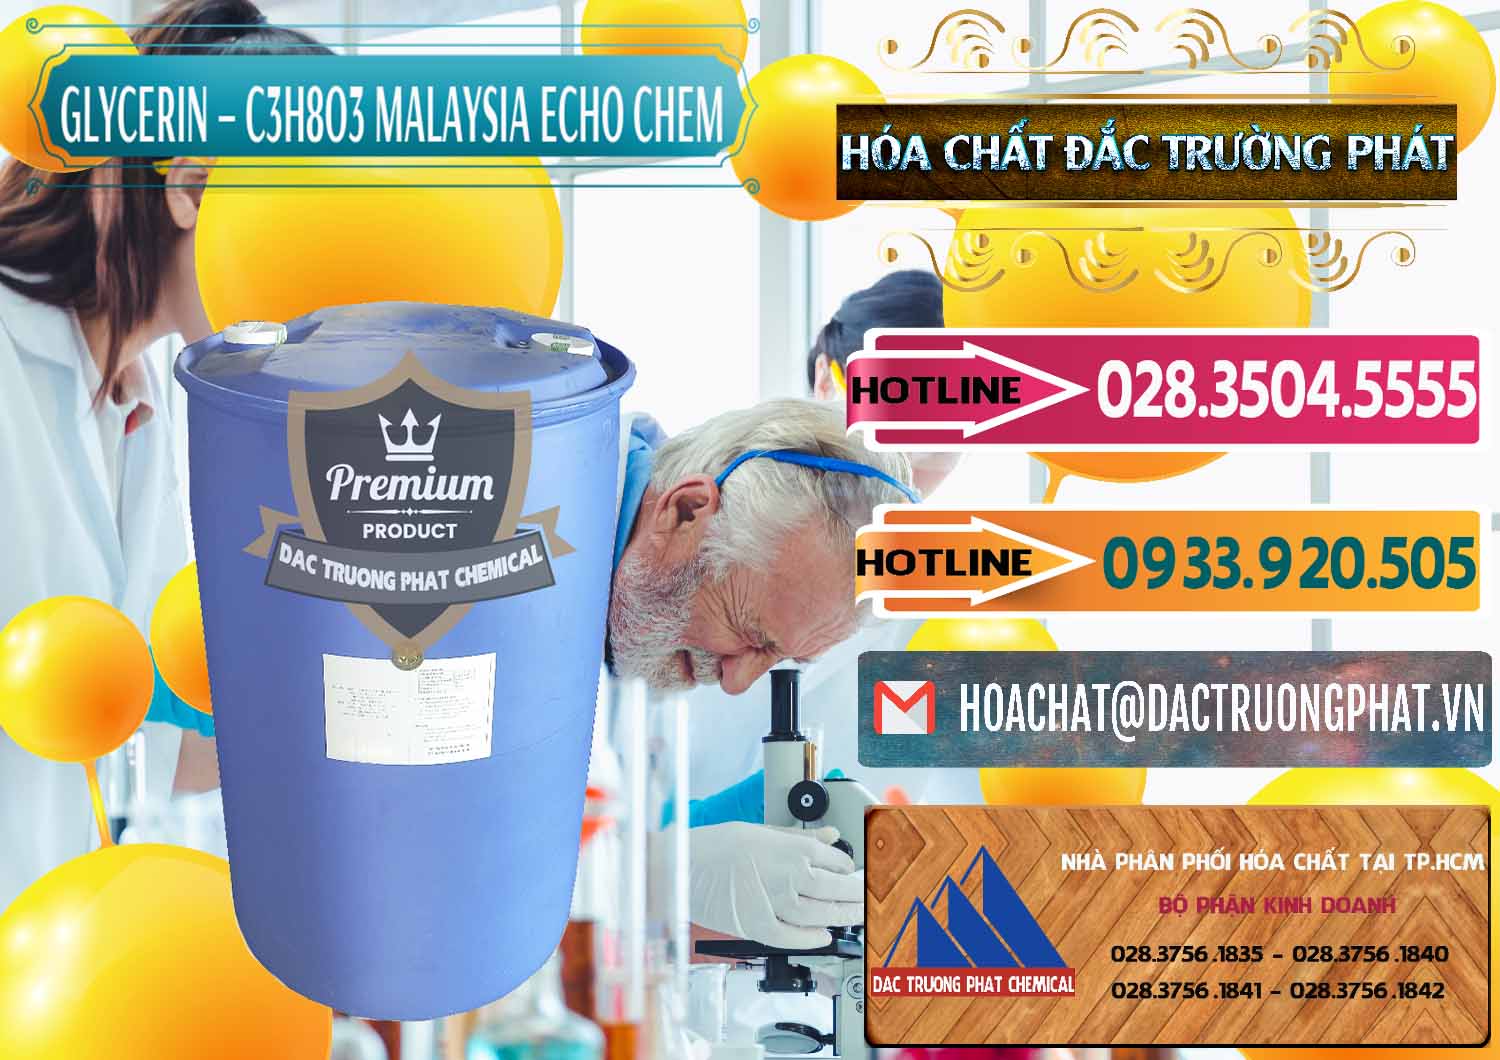 Nơi cung ứng _ bán Glycerin – C3H8O3 99.7% Echo Chem Malaysia - 0273 - Công ty cung cấp ( nhập khẩu ) hóa chất tại TP.HCM - dactruongphat.vn